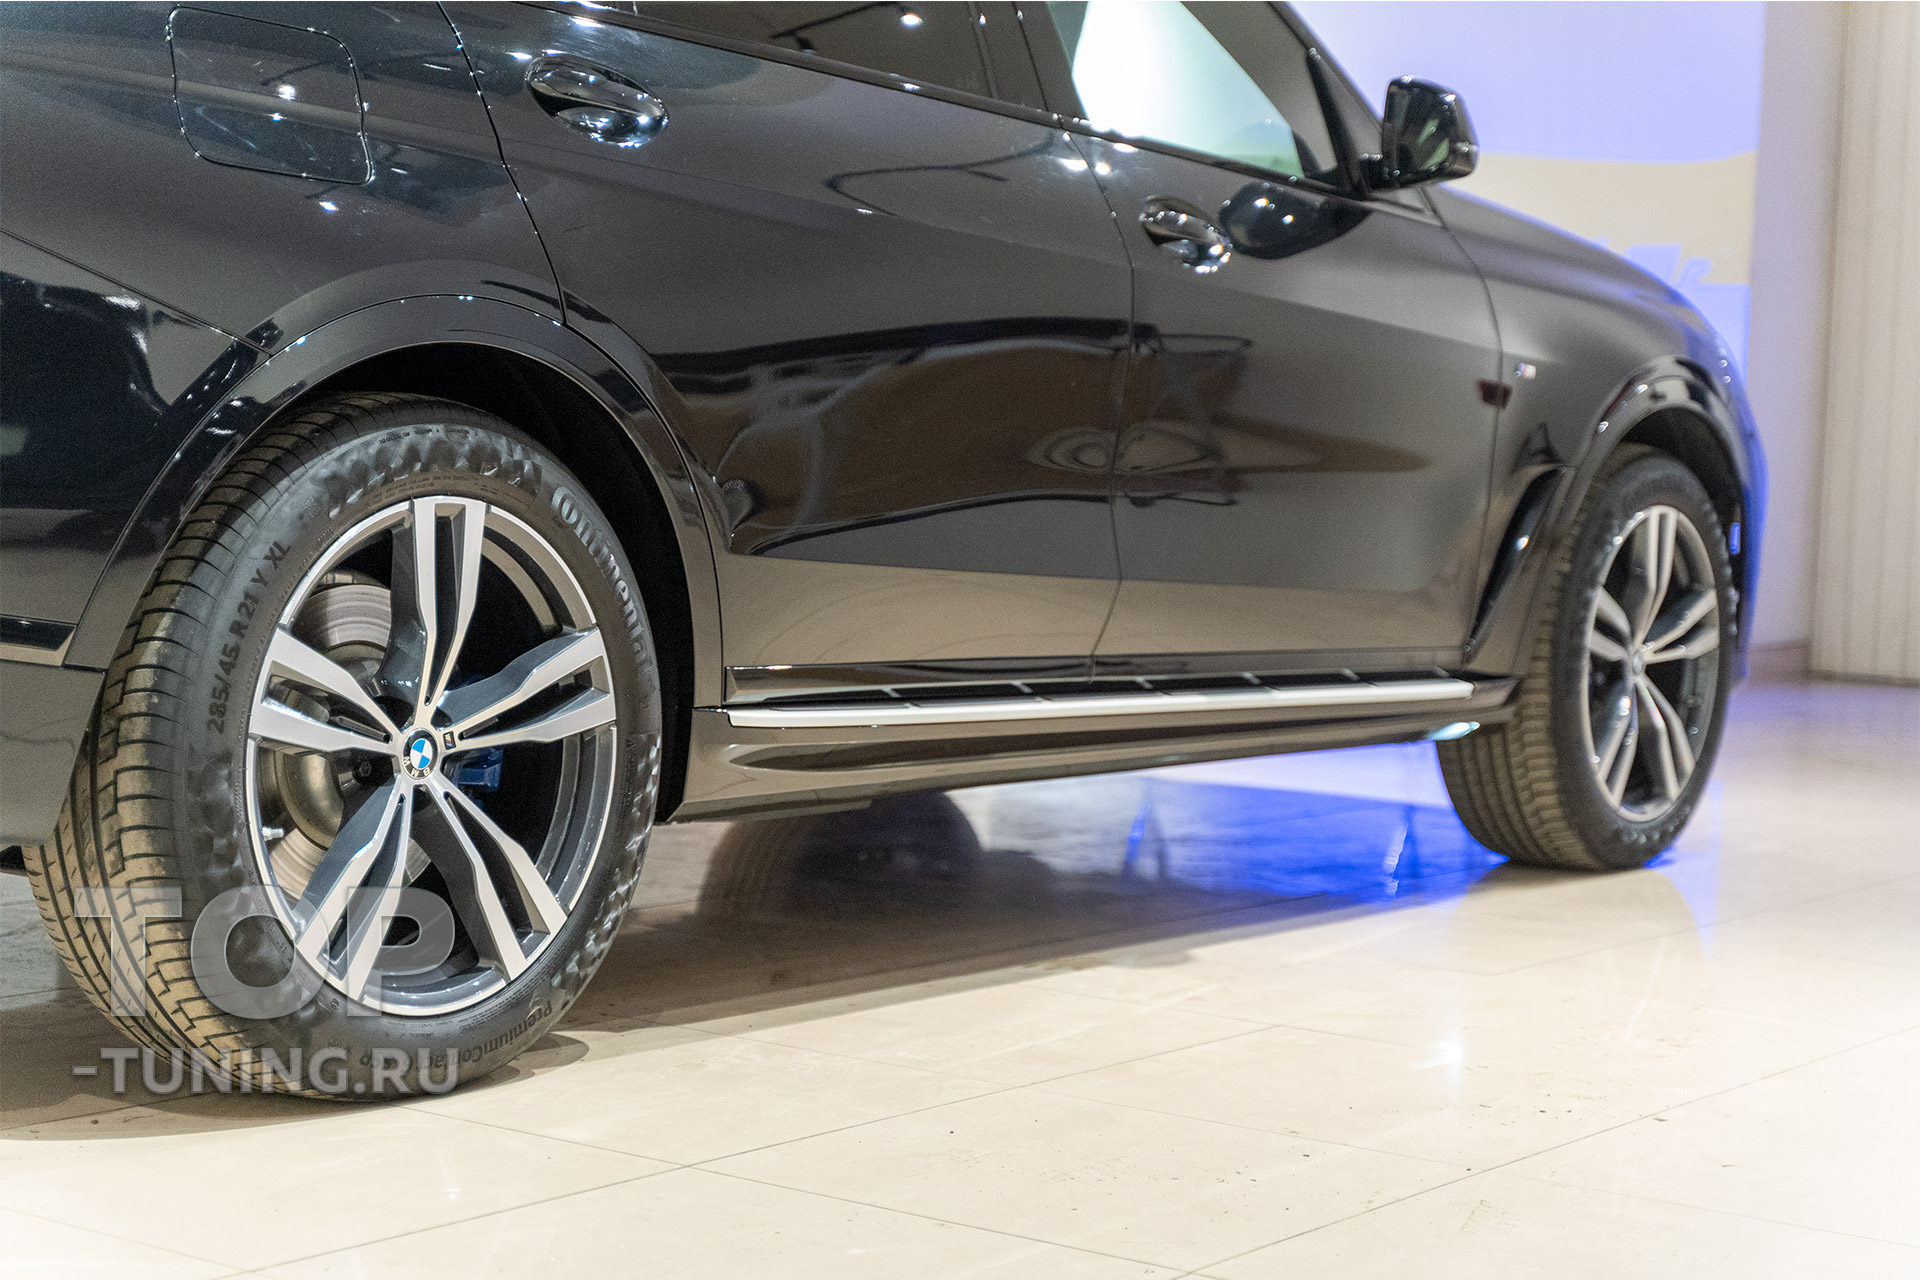 Силовые ступени на пороги BMW X7 в замен штатных накладок М-Спорт. Сравнение до и после. Особенности, цена и наличие 